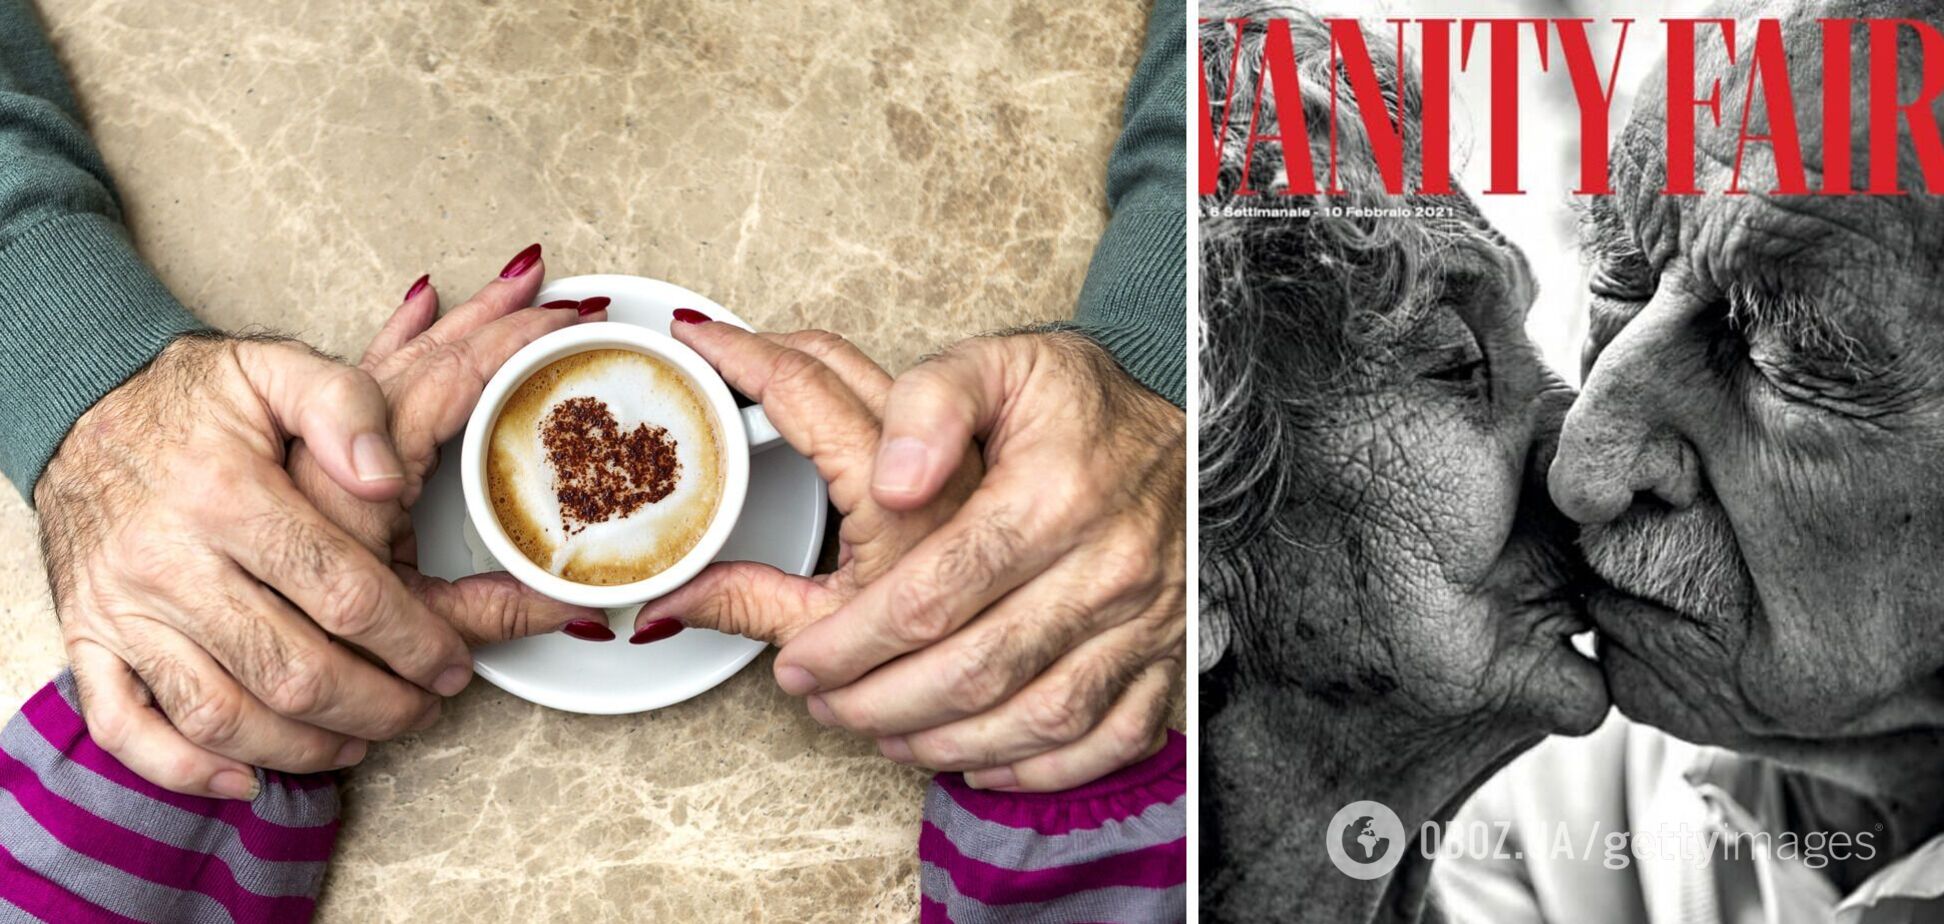 Итальянский журнал посвятил обложку супругам, которые вместе уже 80 лет. Трогательные фото